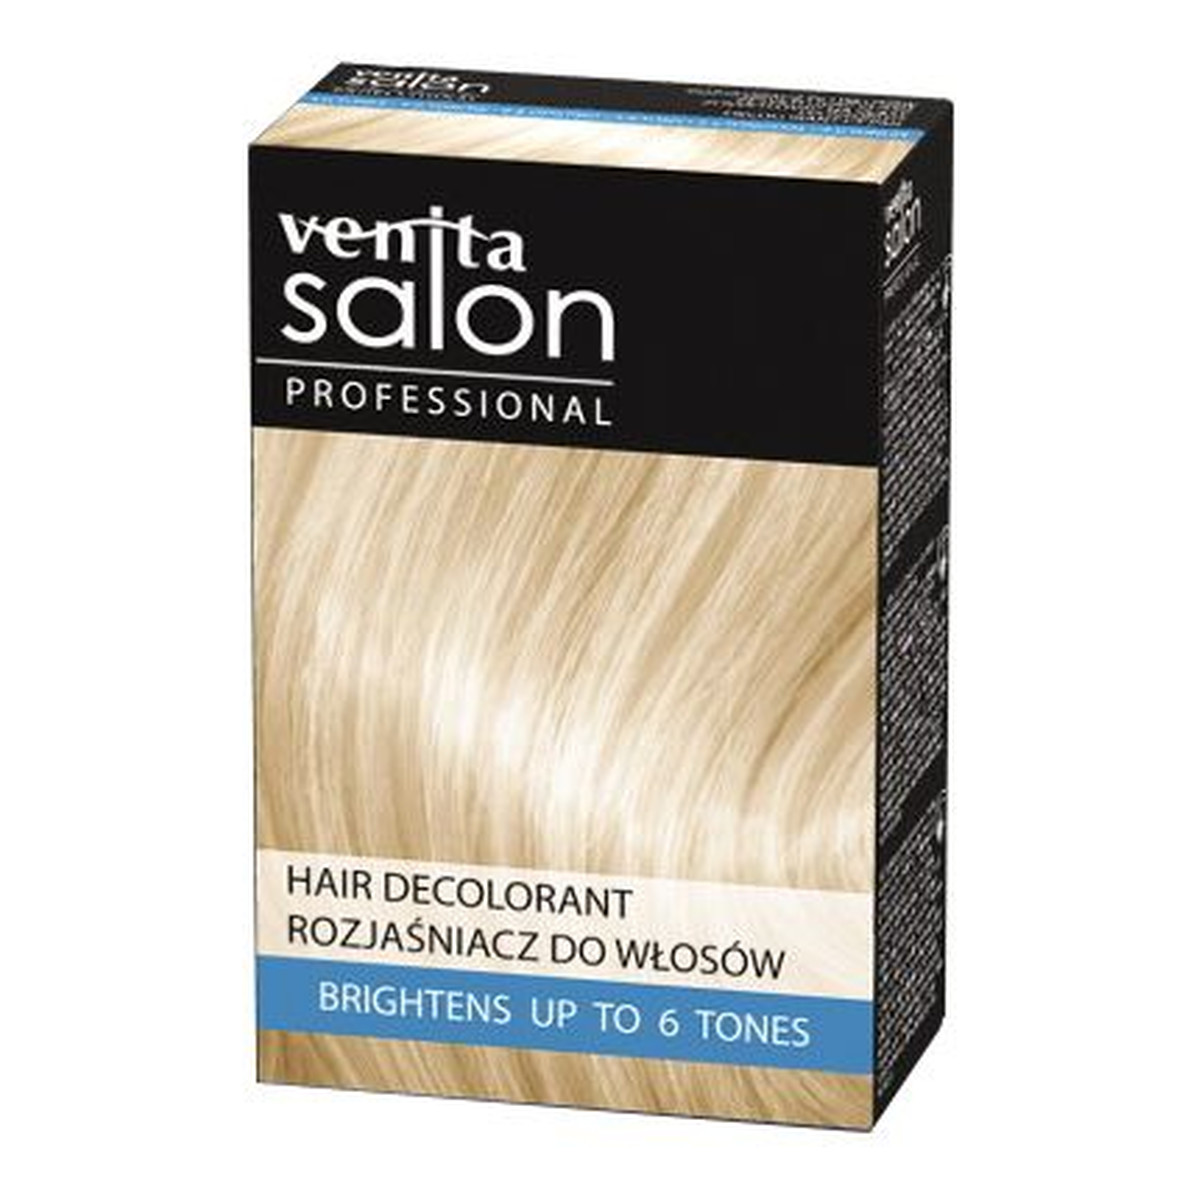 Venita Salon rozjaśniacz do włosów 4-6 tonów DECOLORYZATOR